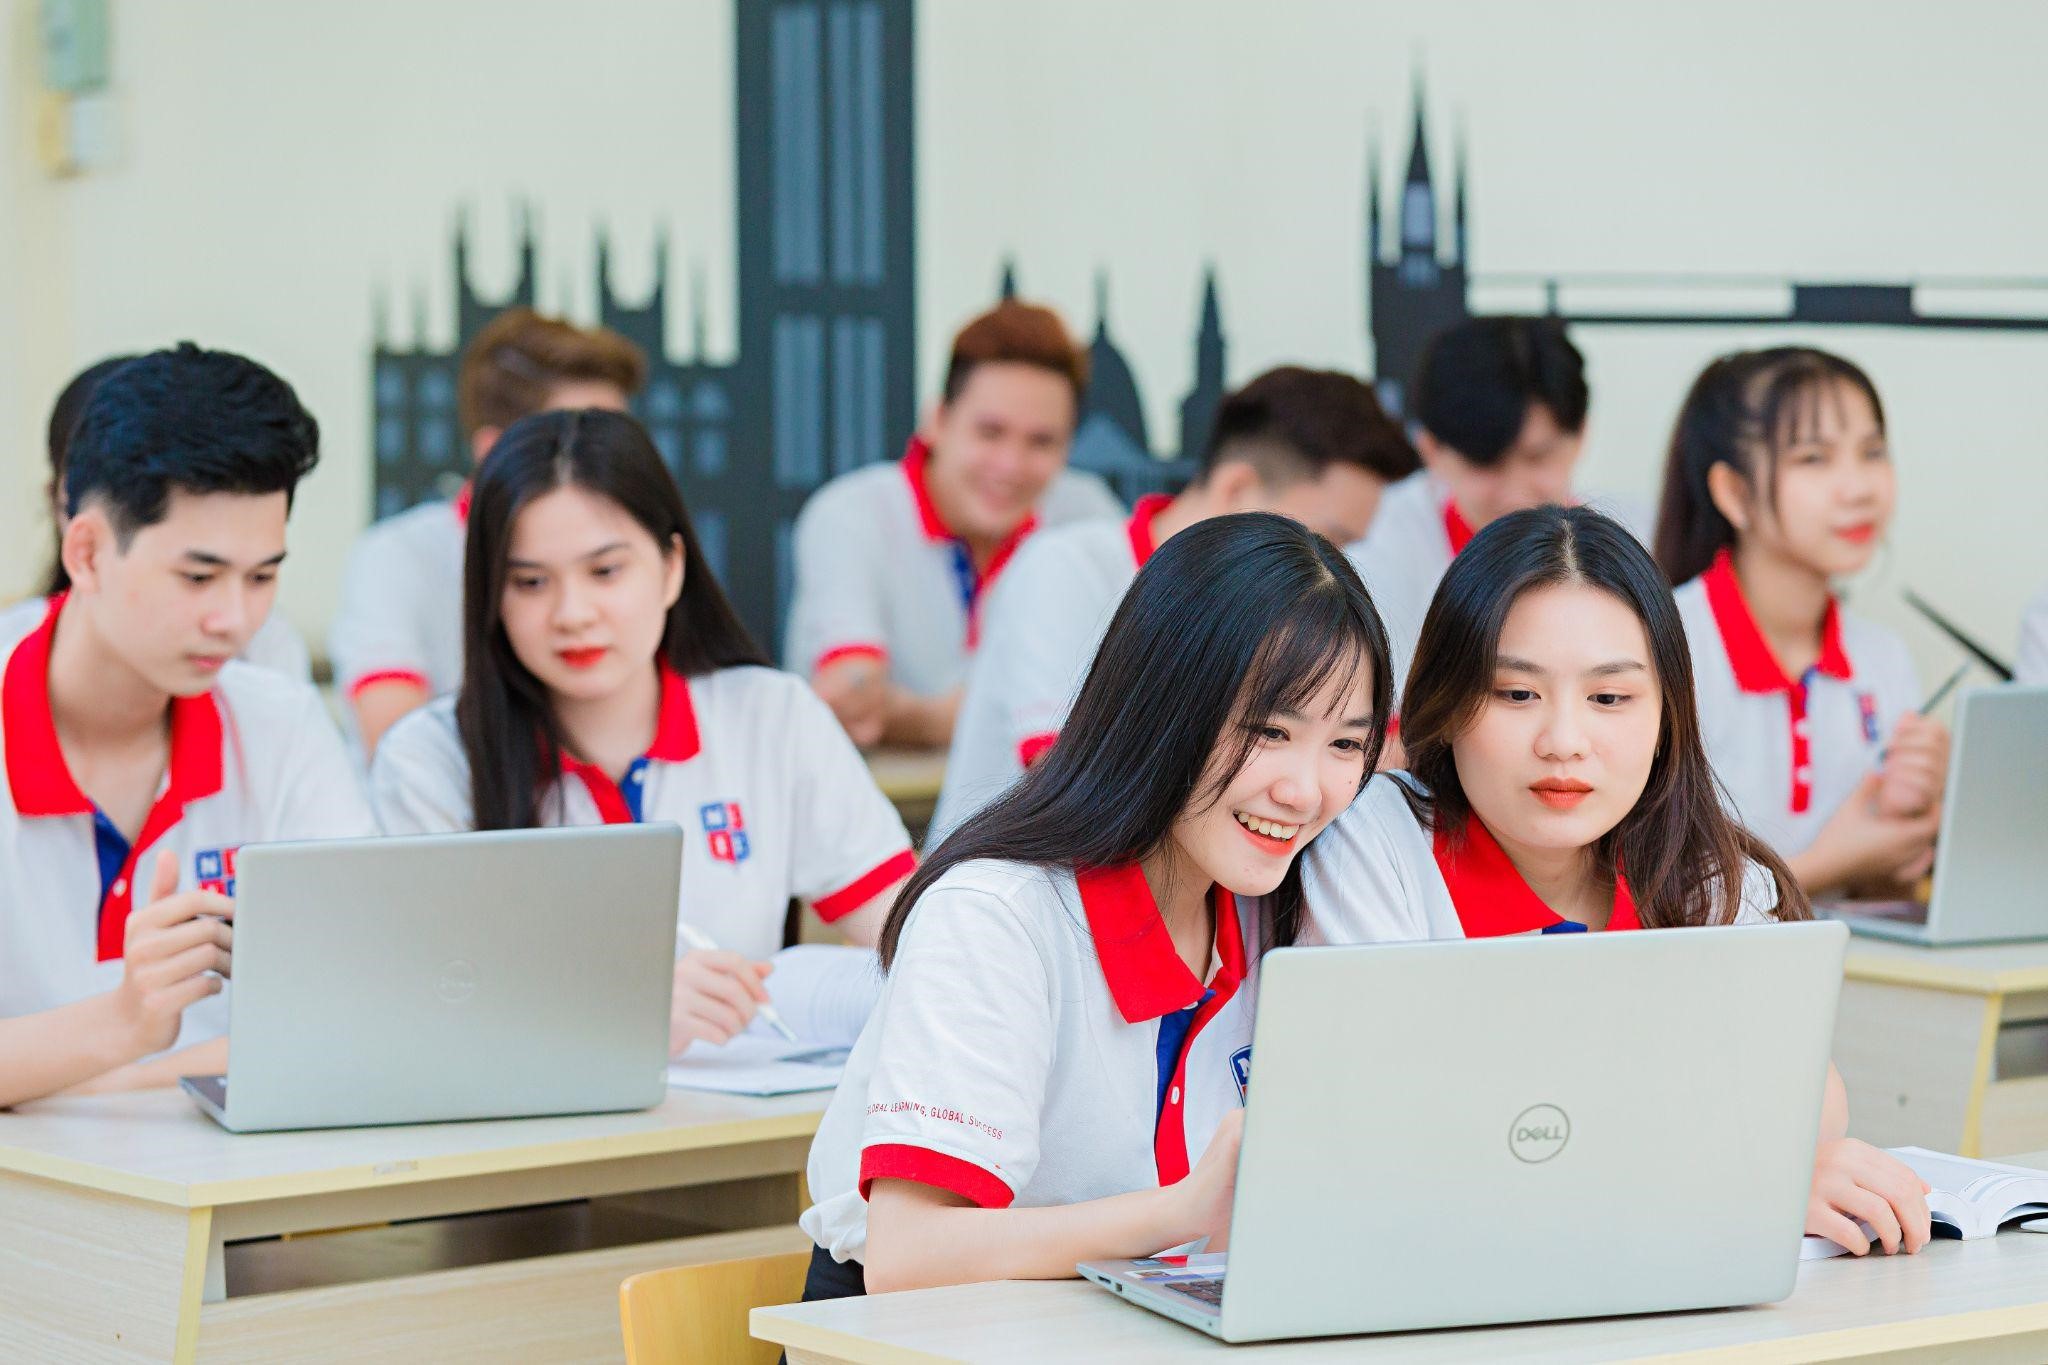 Ngành Công nghệ thông tin tại Viện Đào tạo Quốc tế, ĐH Nguyễn Tất Thành, sinh viên không chỉ rèn luyện chuyên môn mà còn cả kỹ năng mềm và ngoại ngữ (tiếng Anh) để phát triển Công nghệ thông tin